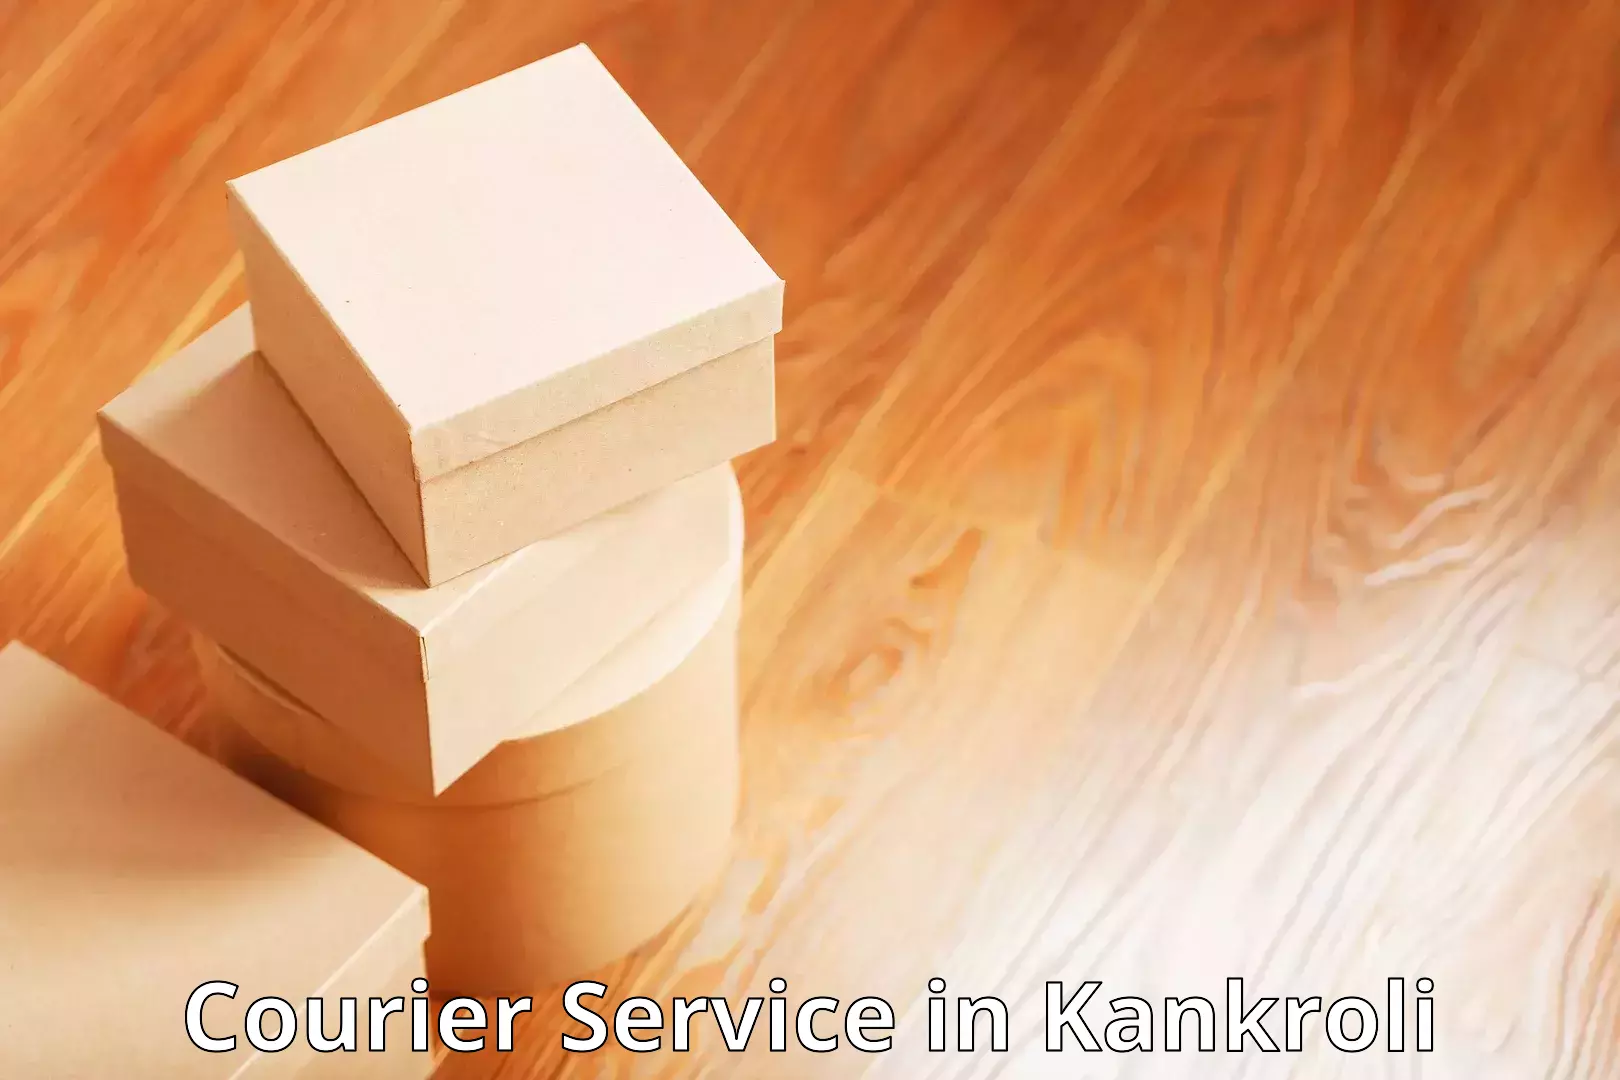 Comprehensive delivery network in Kankroli